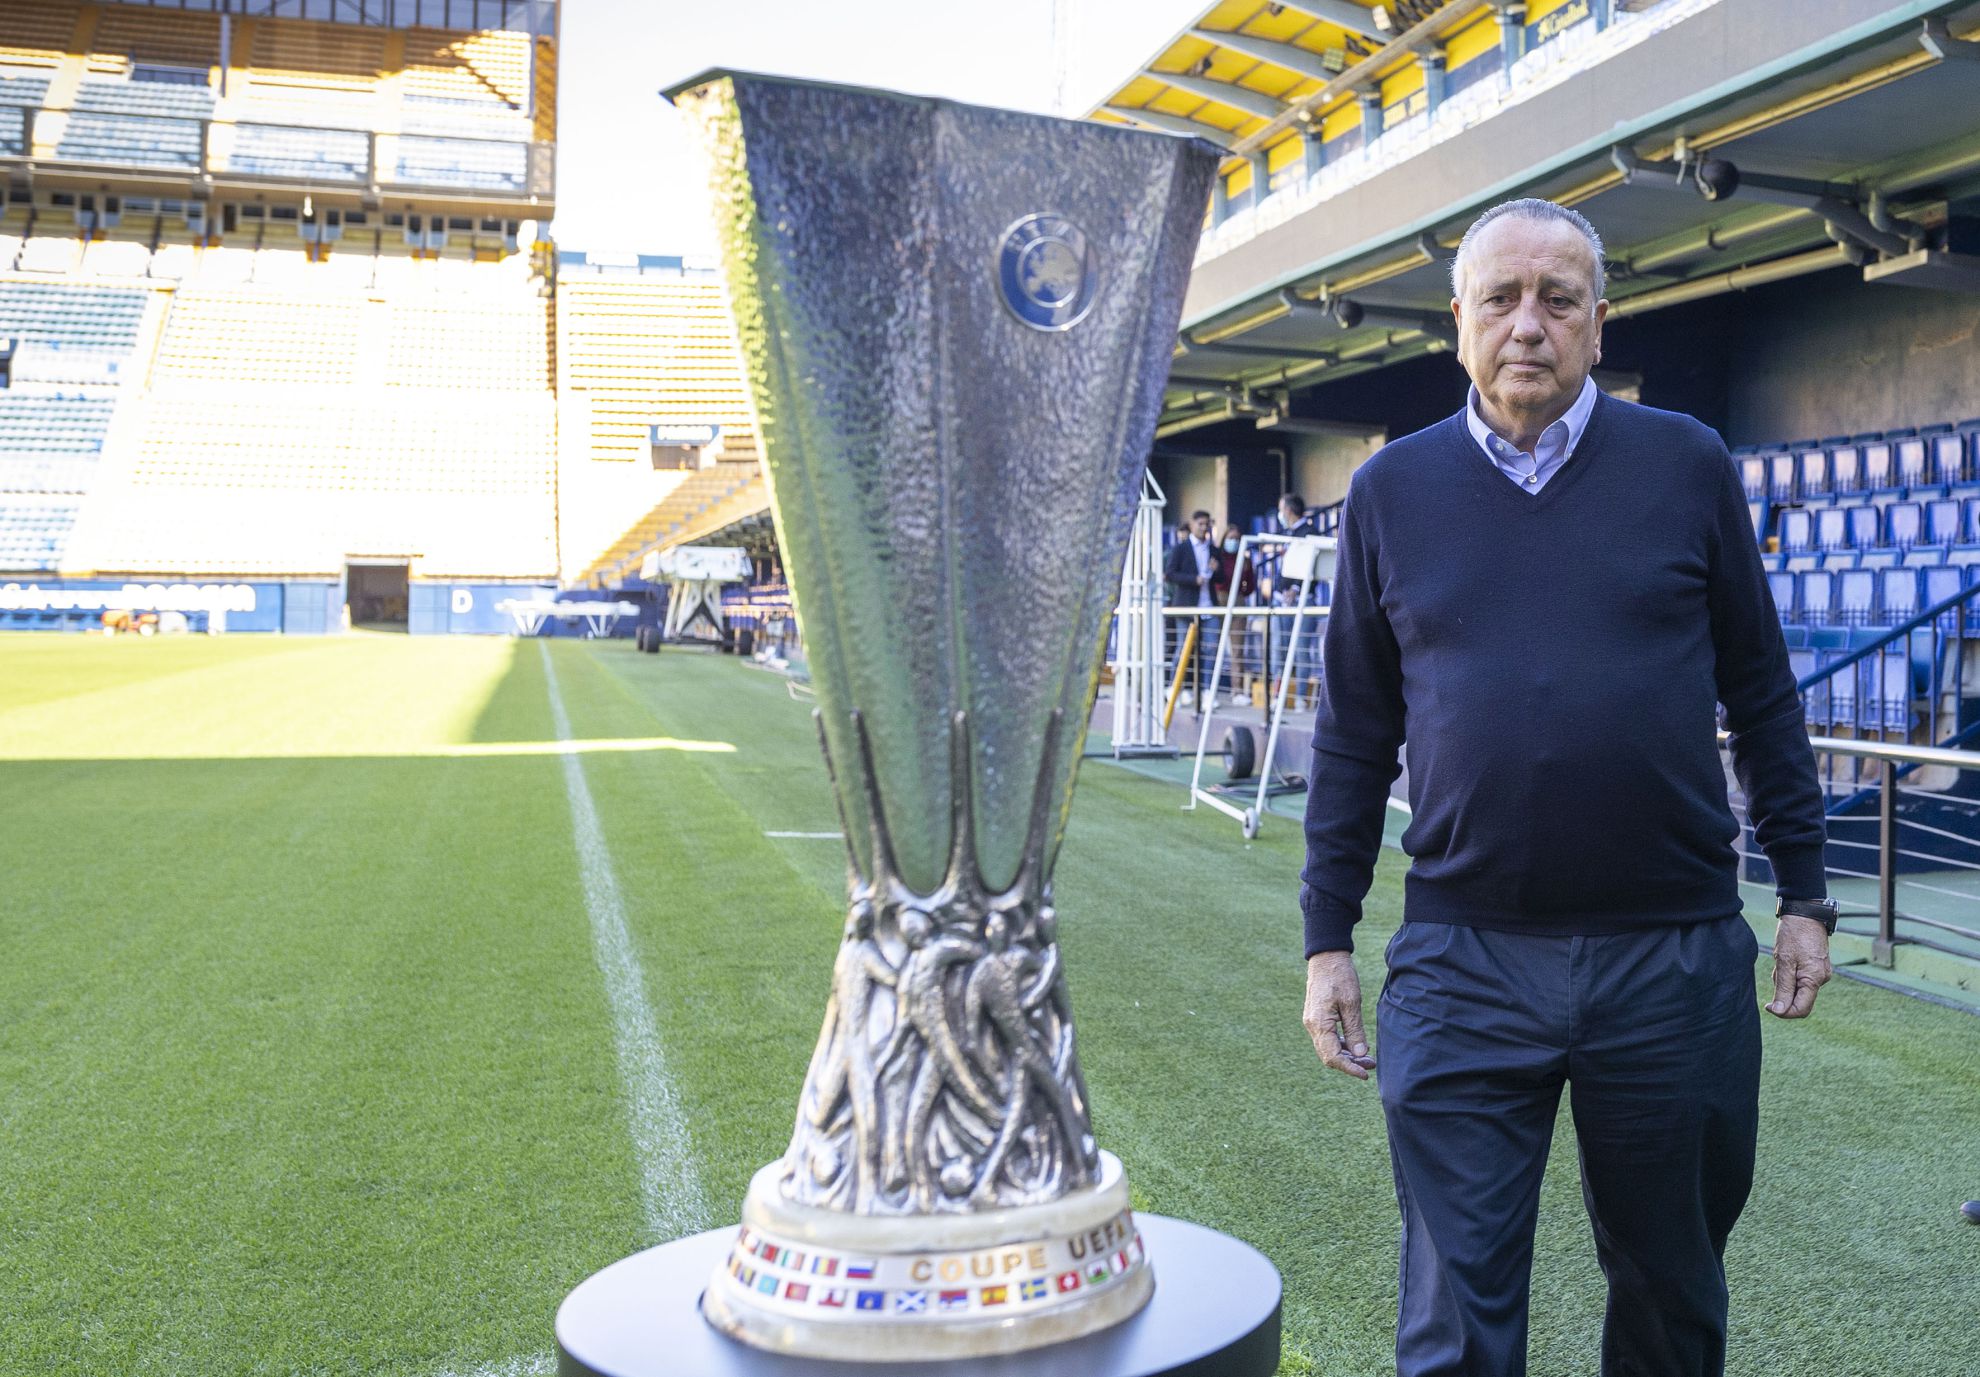 Roig, el presidente del campeón: "En el Villarreal no hay más secreto que el trabajo"